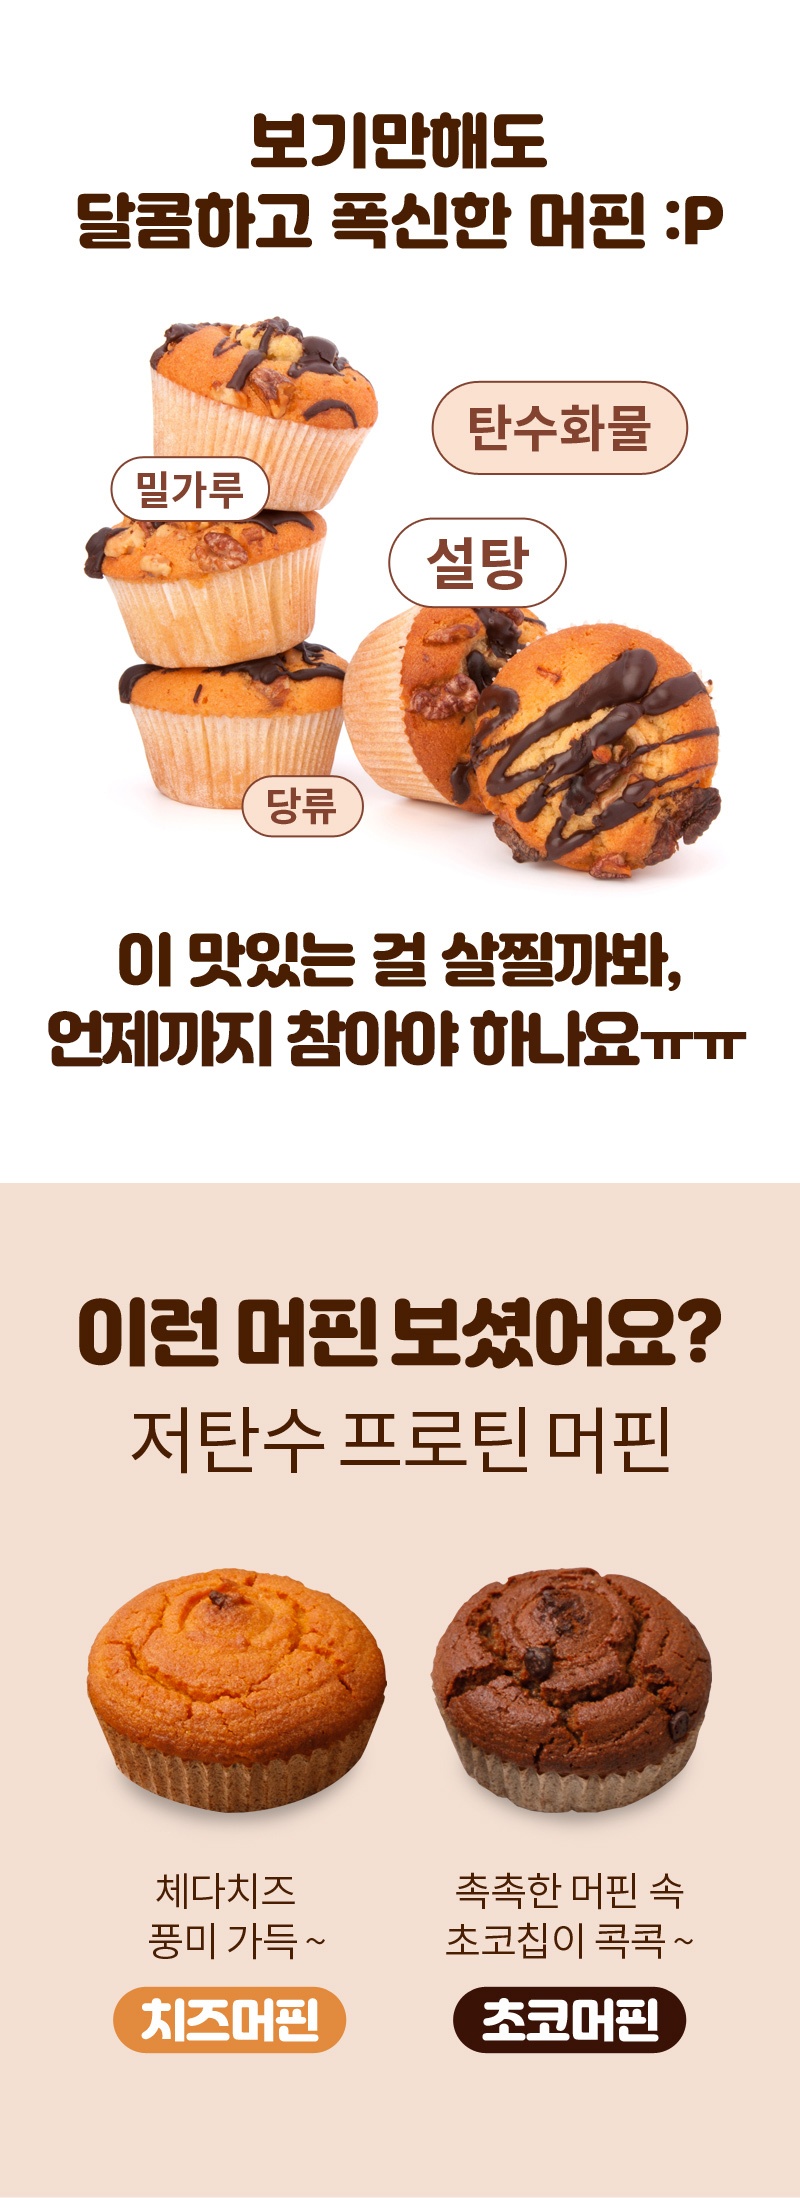 성수동 제빵소 머핀 체험단 모집 (10.29~11.11)